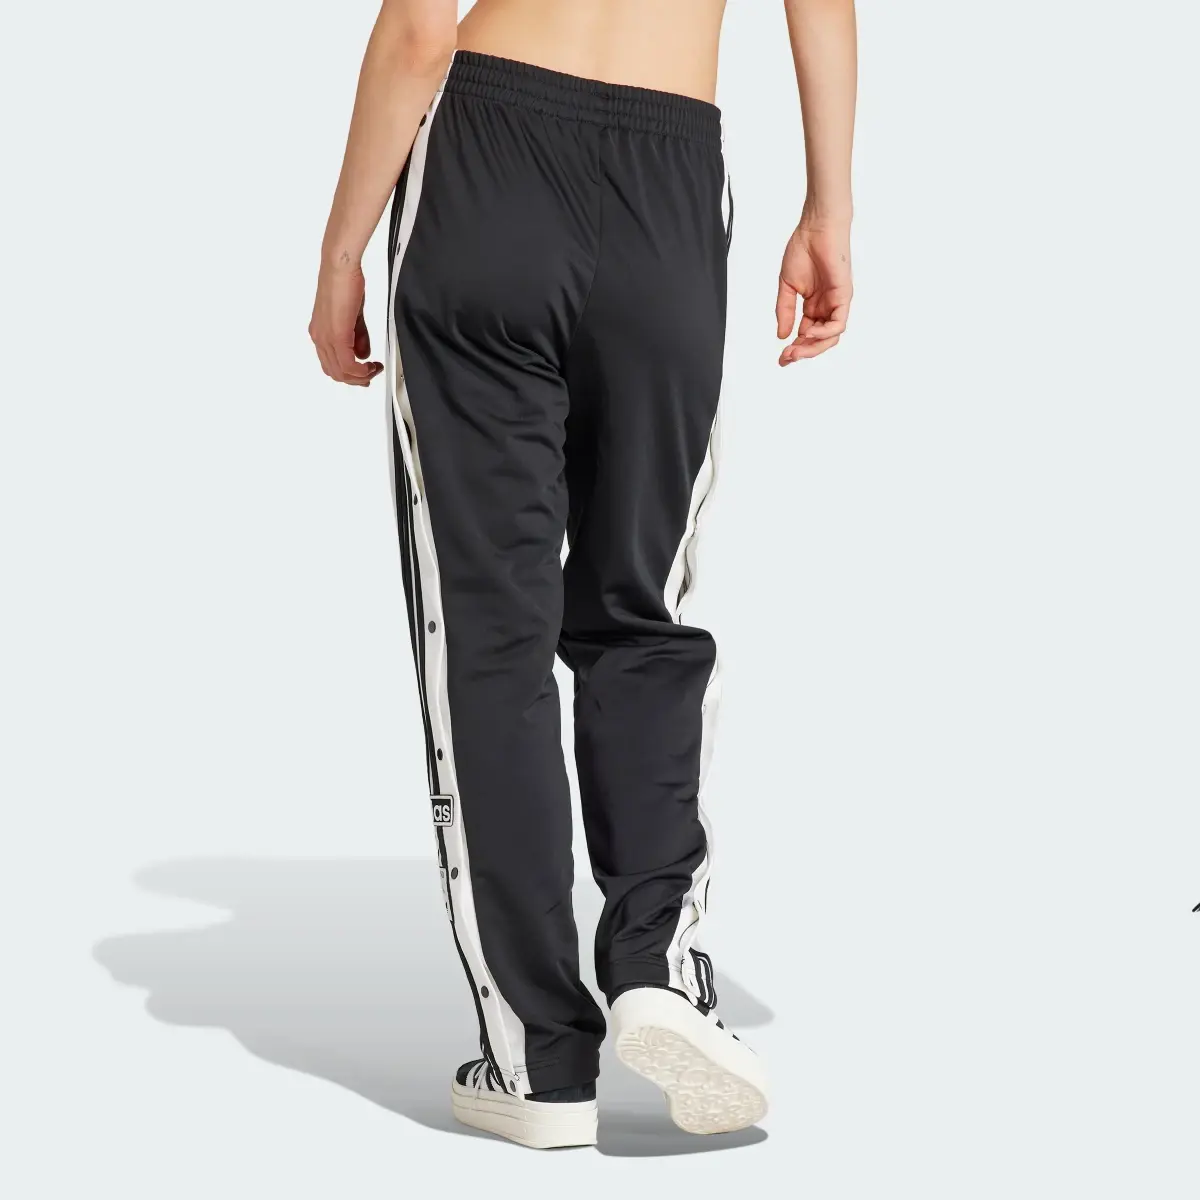 Adidas Adibreak Pants. 2